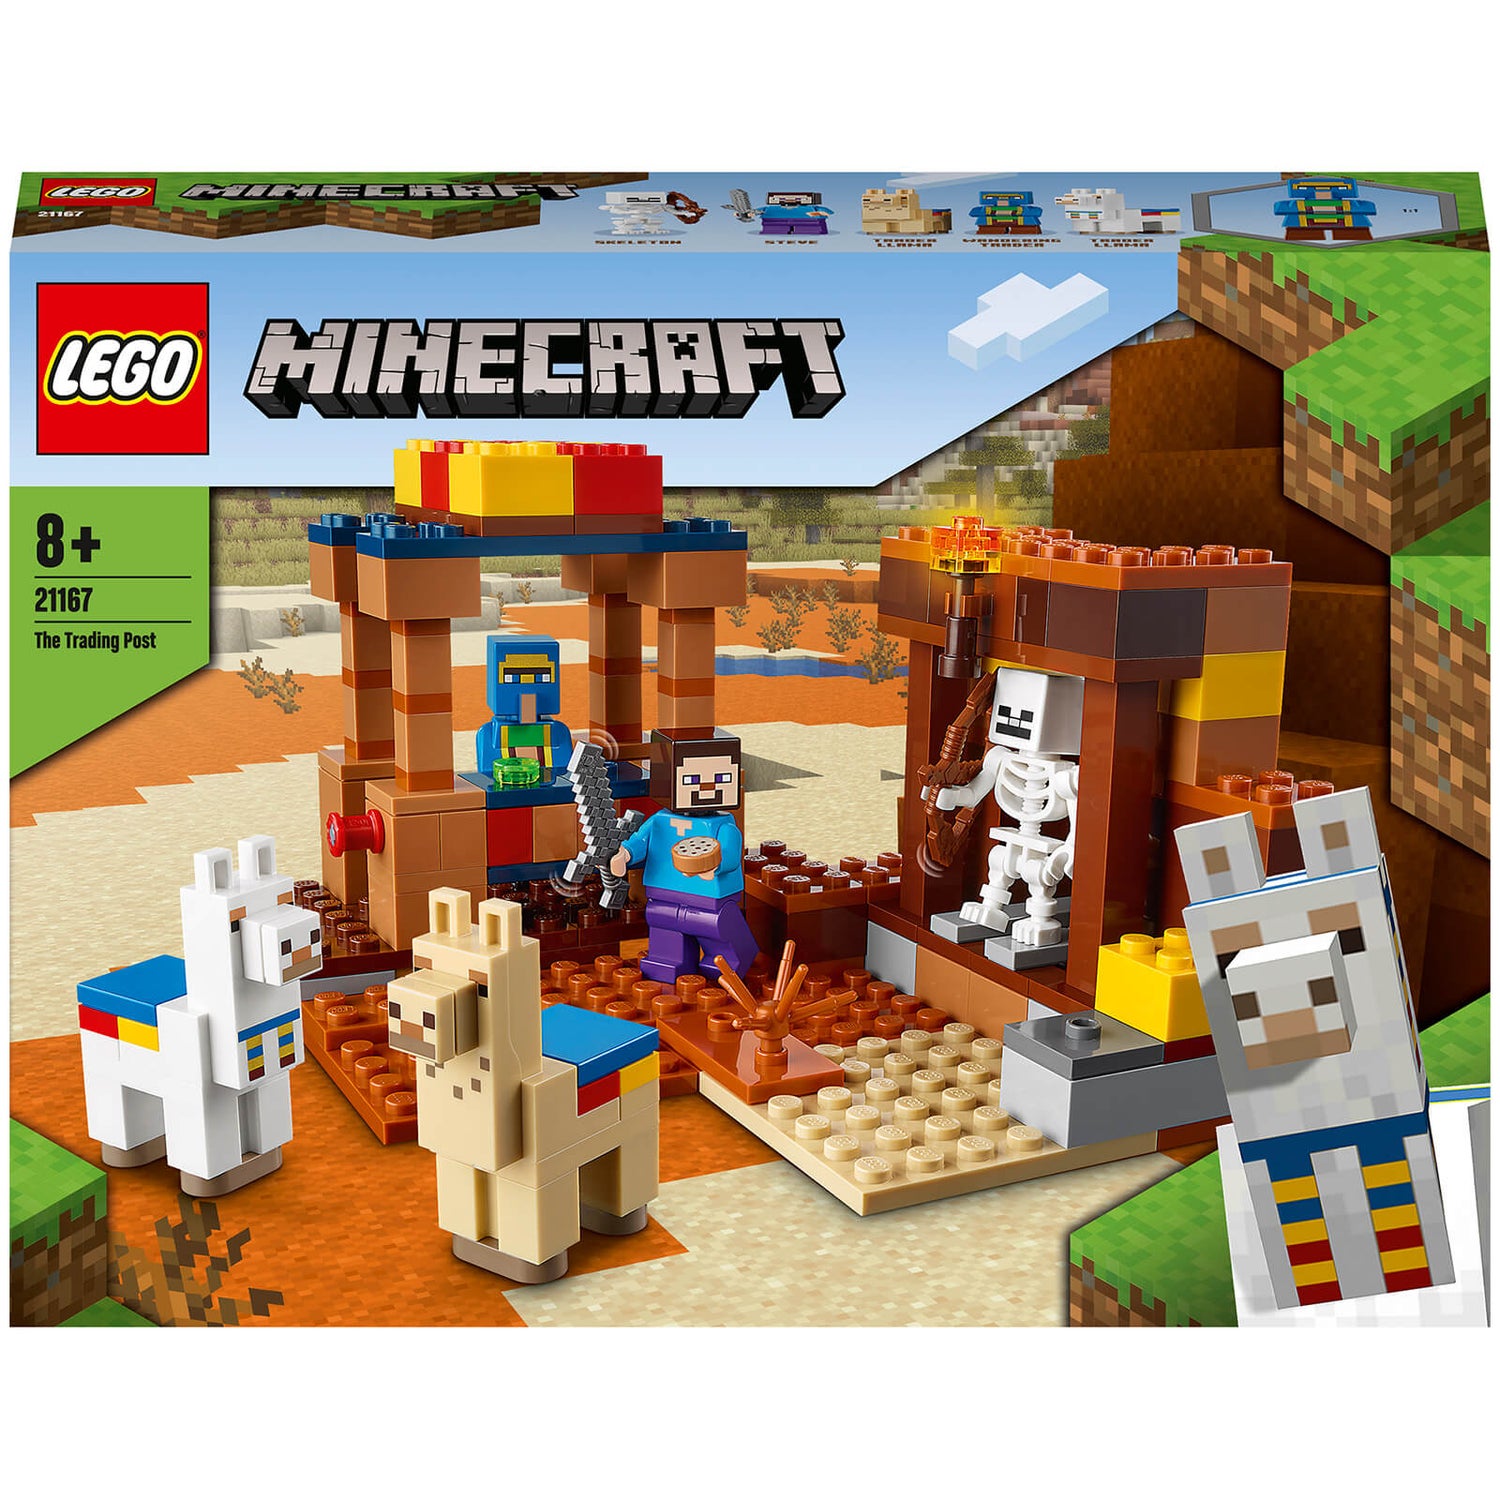 LEGO 21167 Minecraft De Handelspost Bouwset met Poppetjes van Steve en Skelet, Constructiespeelgoed voor Kinderen vanaf 8 Jaar